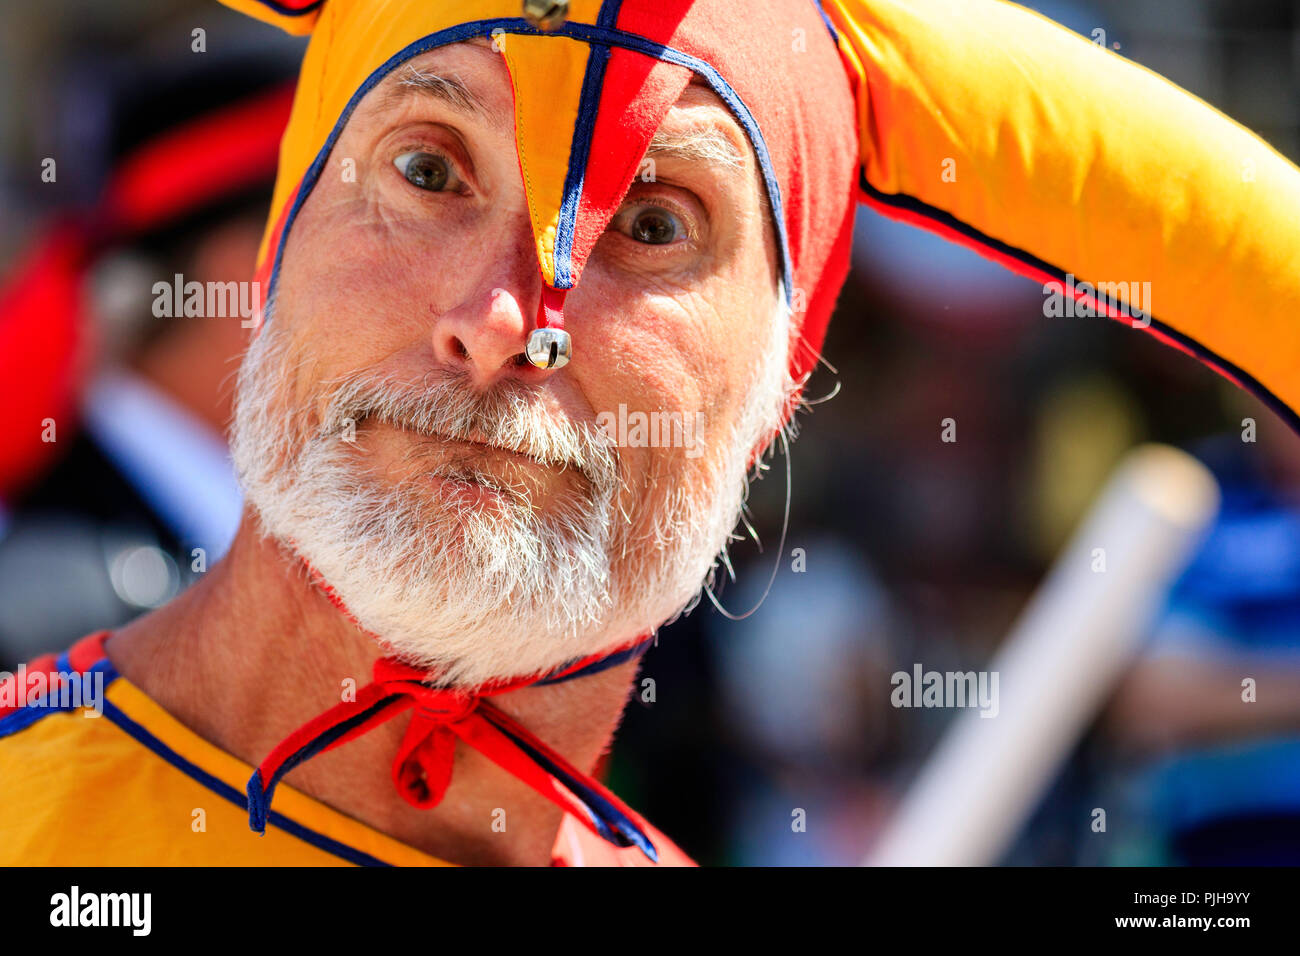 Homme mûr en orange et jaune costume médiéval, fou, clown. Portrait de face, comme il a l'air directement au spectateur, le contact oculaire, barbe grise. Banque D'Images